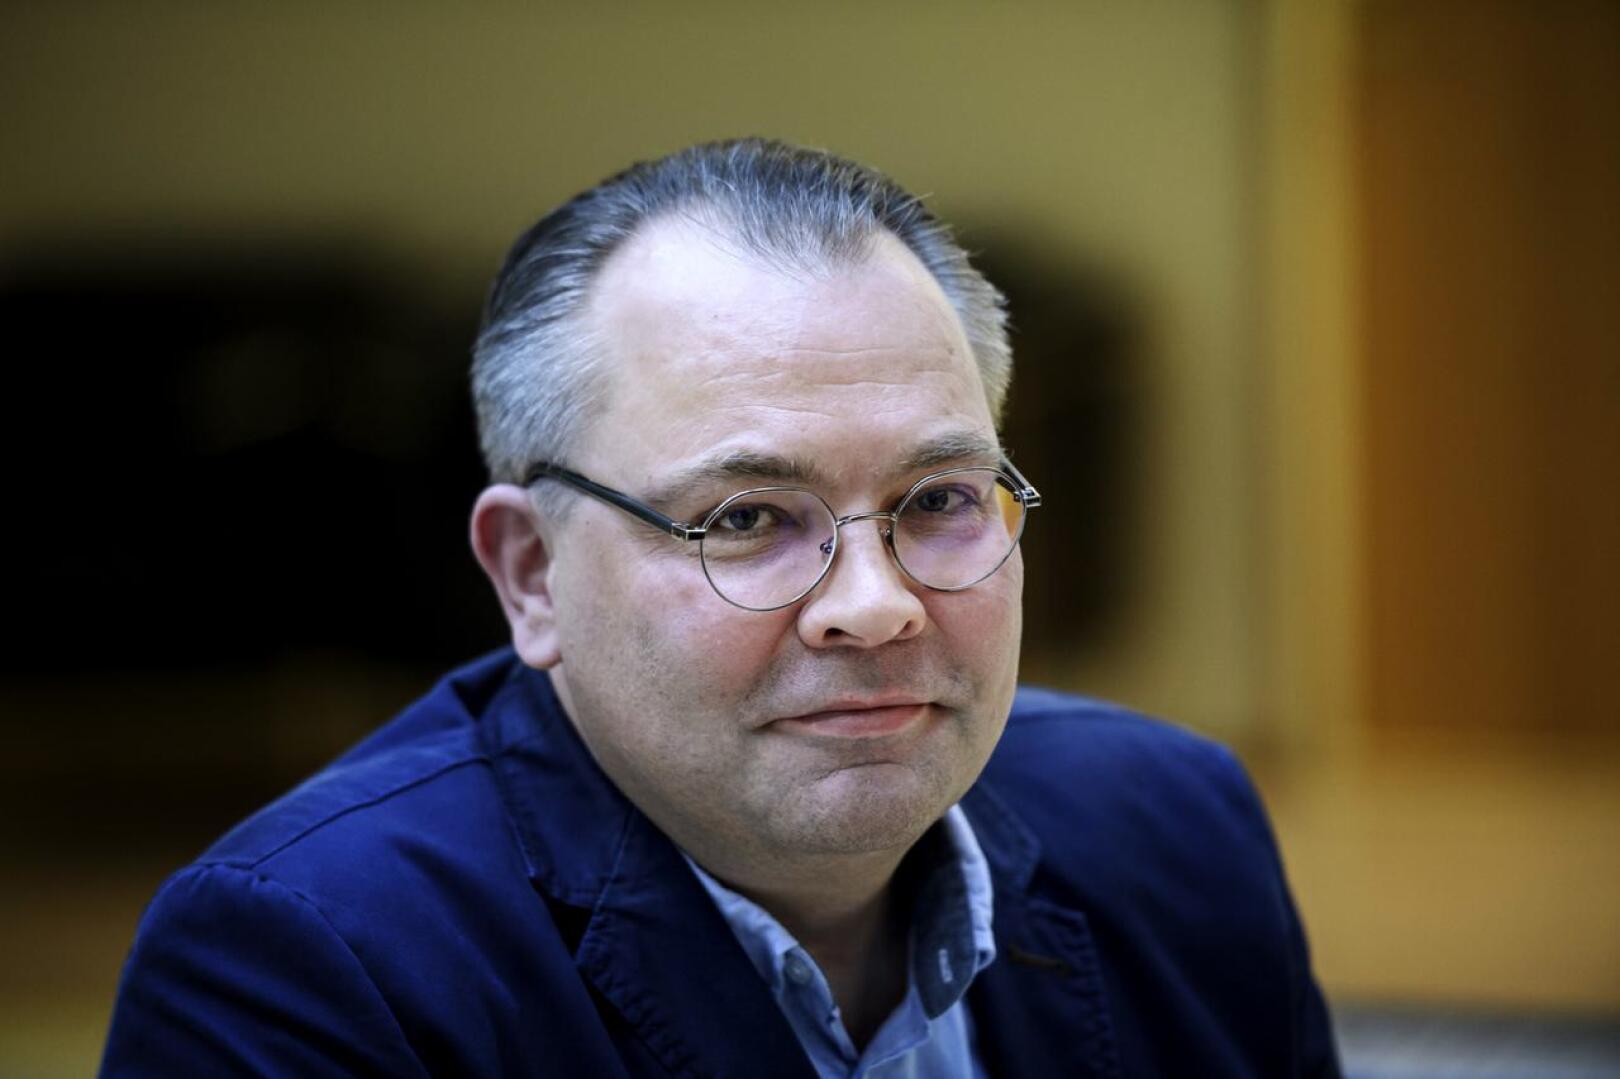 Kannuksen kaupunginjohtaja, ex-puolustusministeri Jussi Niinistö antoi valistuneita arvioita maanantaina Ylen erikoislähetyksessä.